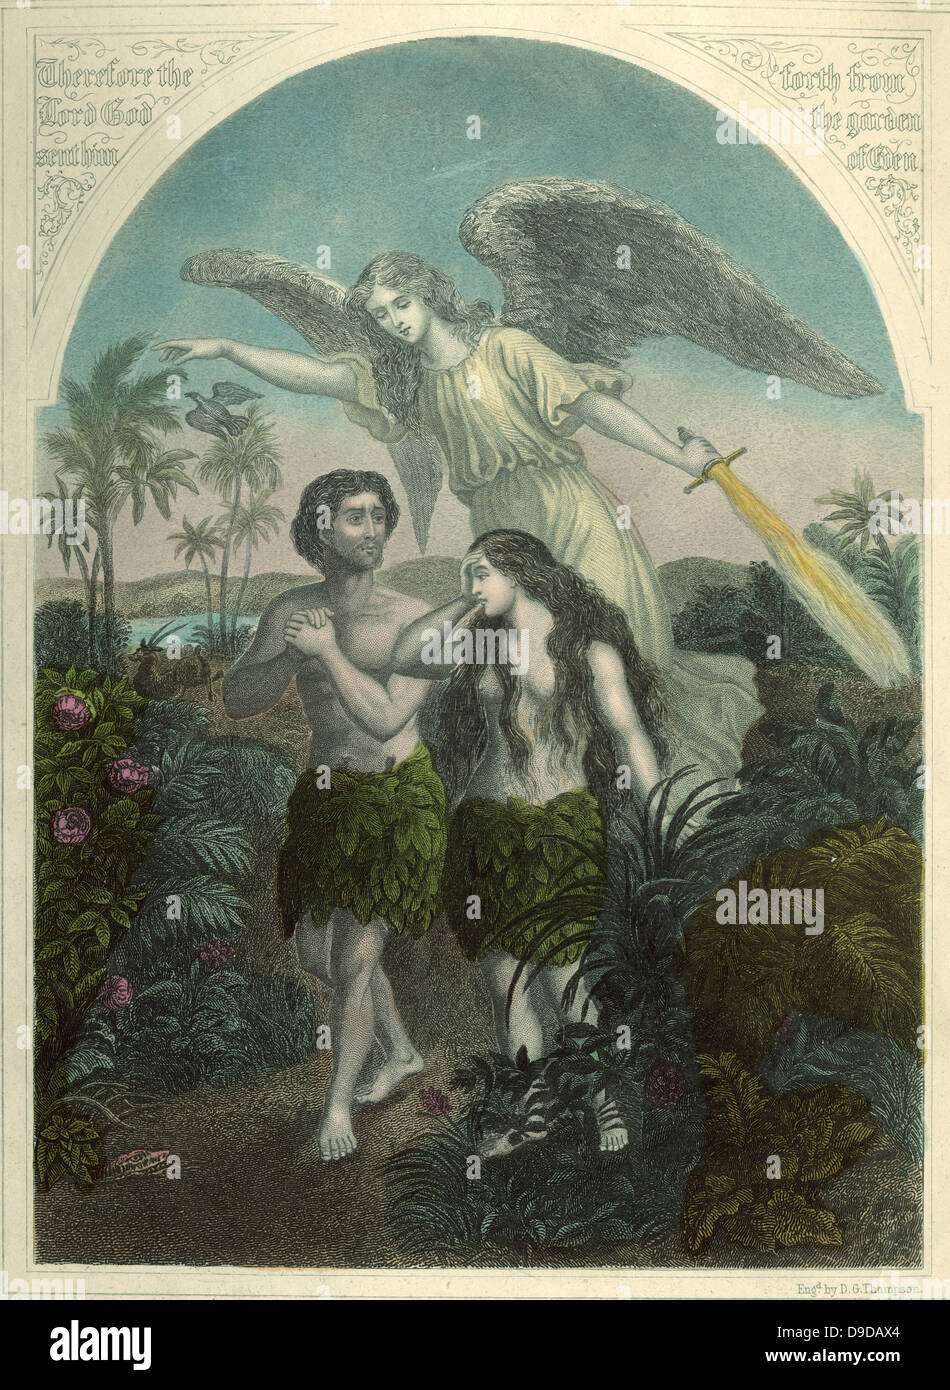 Adán y Eva siendo impulsado desde el Jardín del Edén por el Ángel de Dios para comer la fruta prohibida. Grabado del siglo xix. Foto de stock